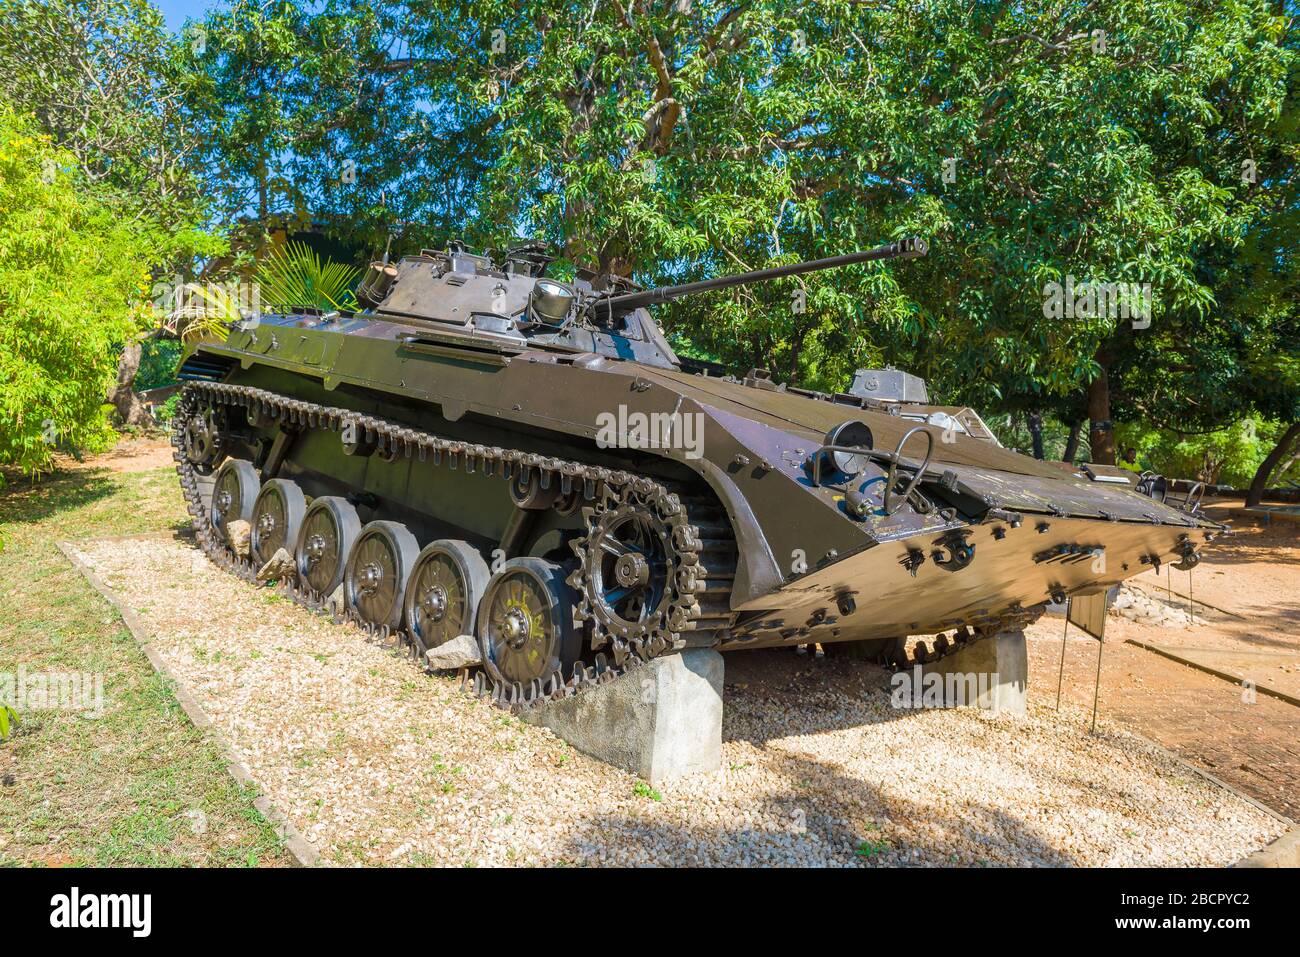 TRINCOMALI, SRI LANKA - 10 FÉVRIER 2020: Véhicule de combat d'infanterie russe - BMP-2 au Musée de la guerre d'Orr Hill Banque D'Images